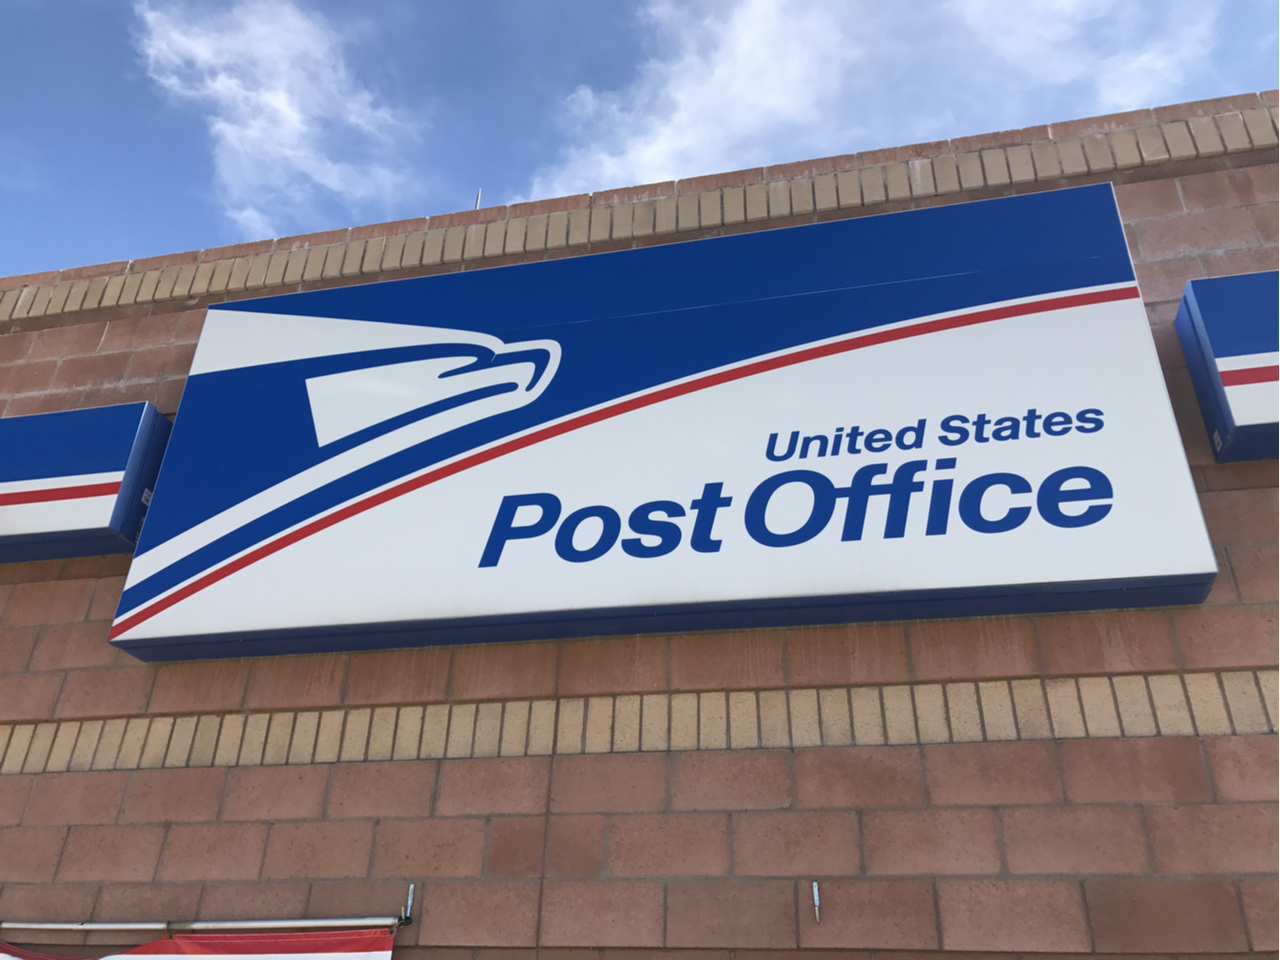 Registrare un indirizzo di posta negli Stati Uniti